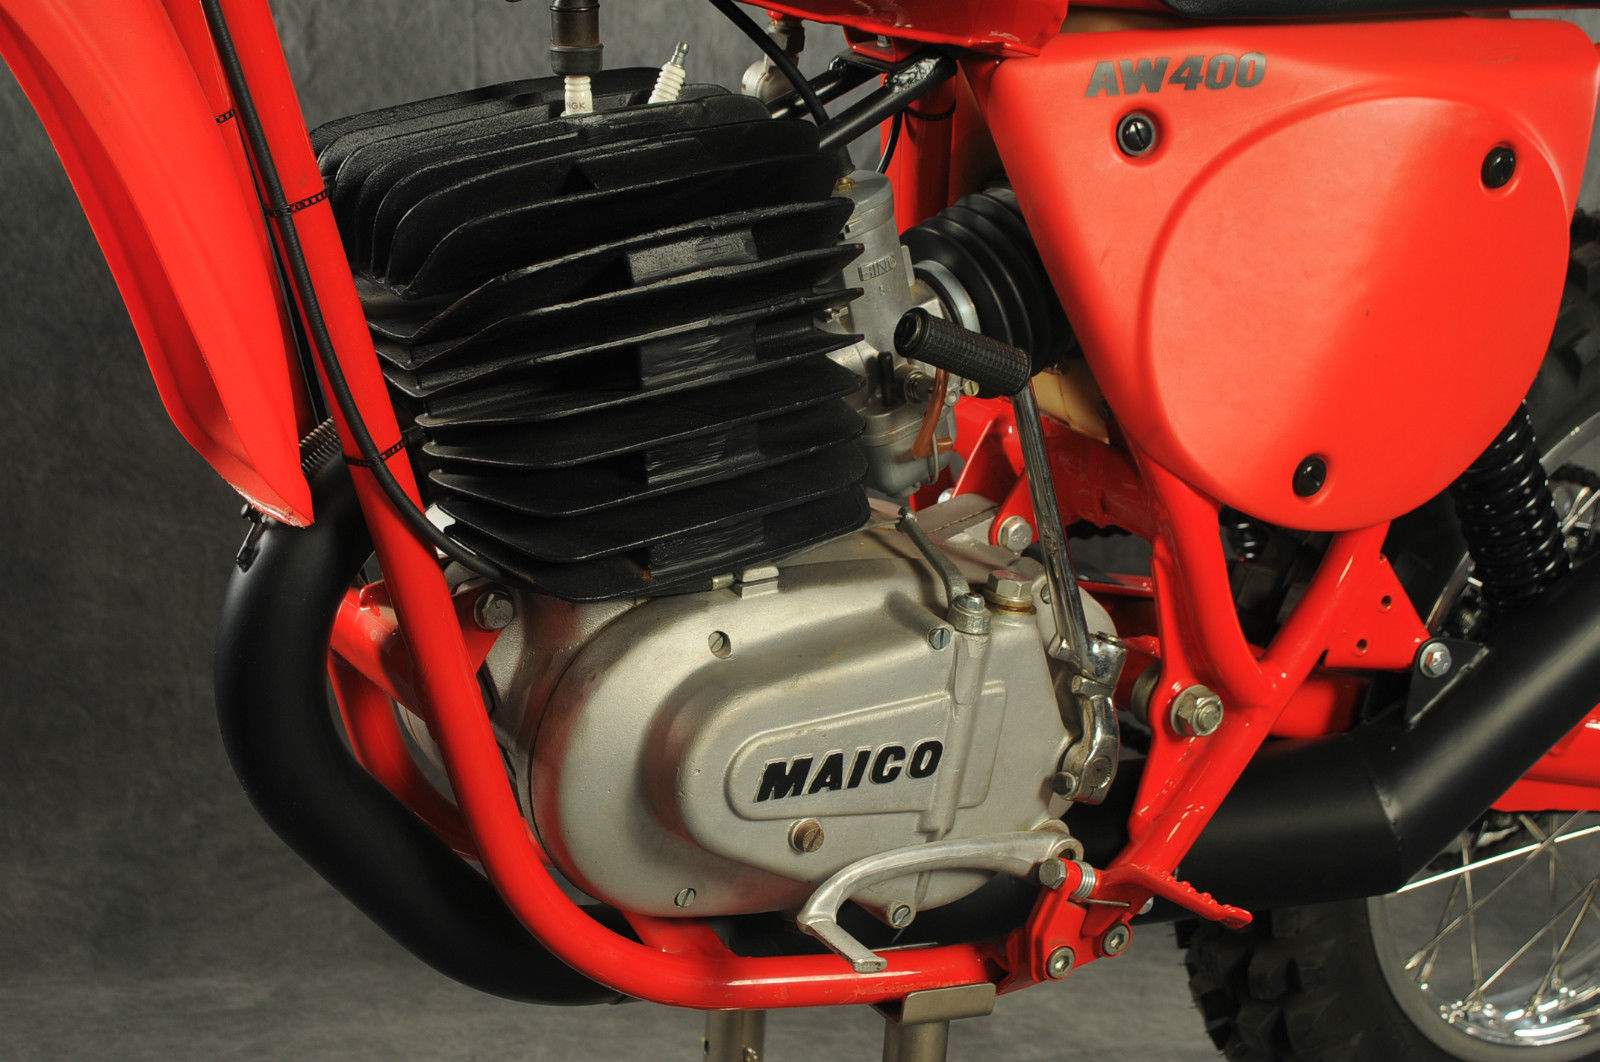 Maico AW400 - 1977